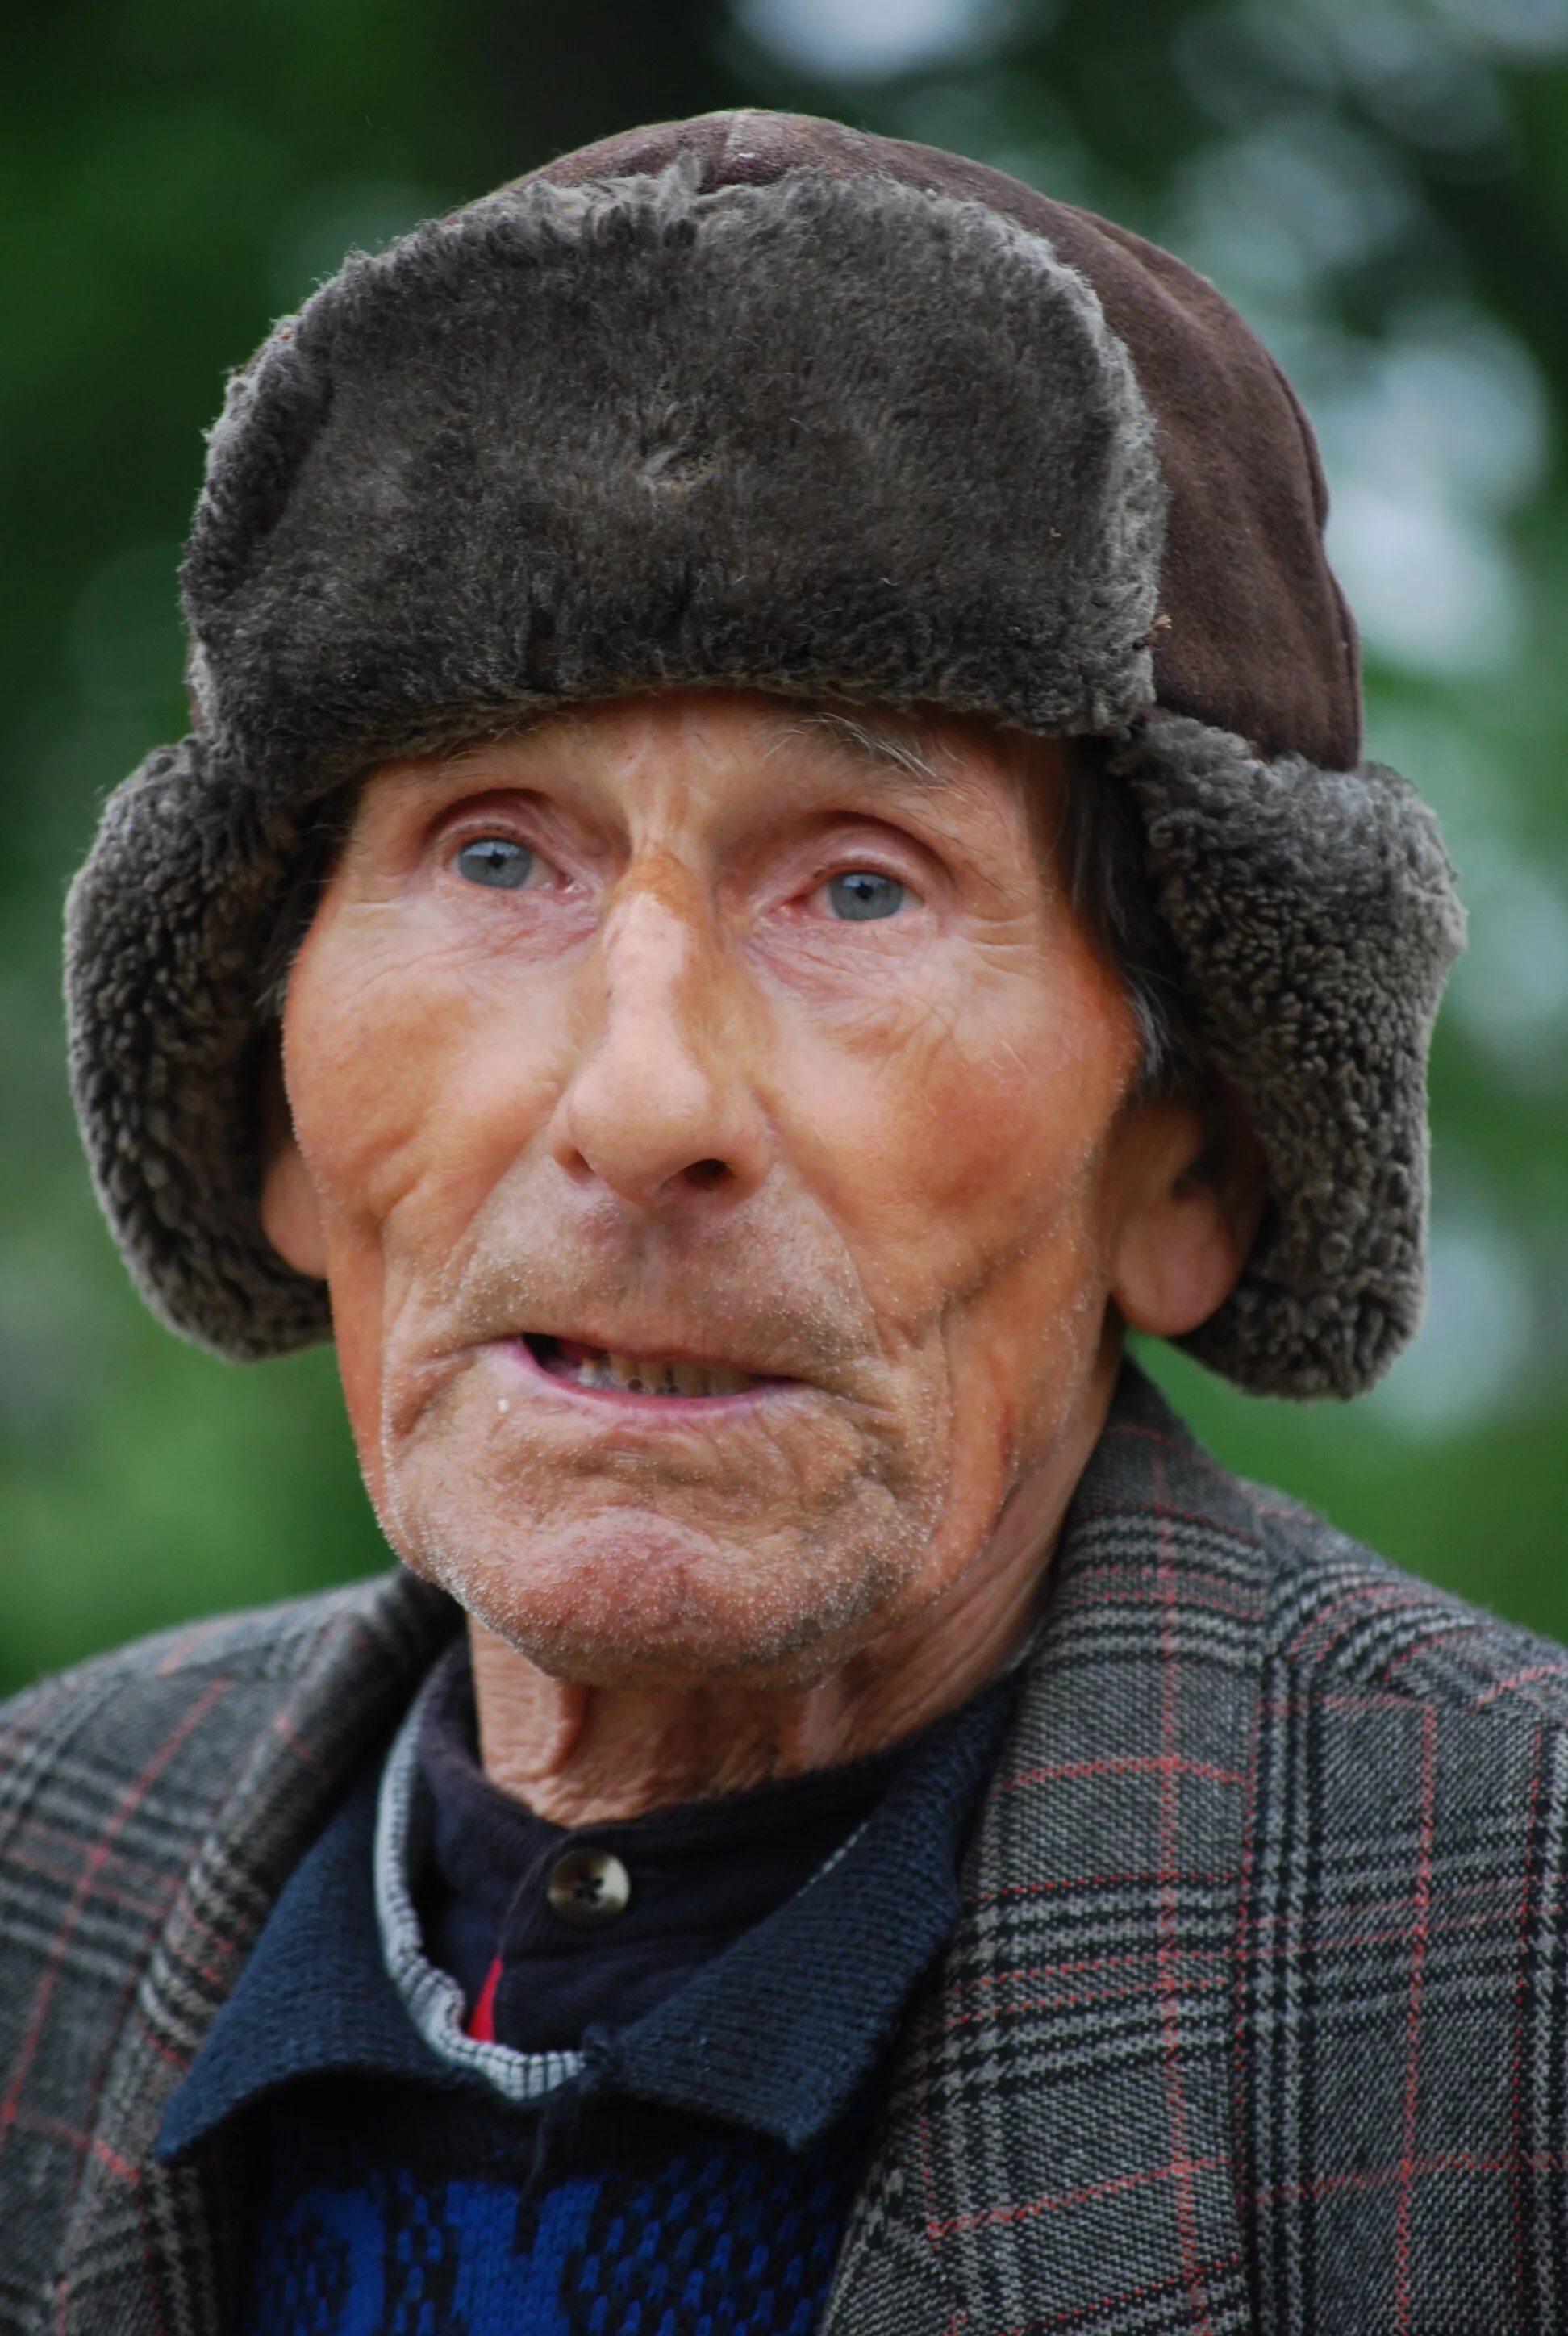 Пожилой мужчина москва. Старик. Старый человек. Фотографии людей. Портрет пожилого мужчины.